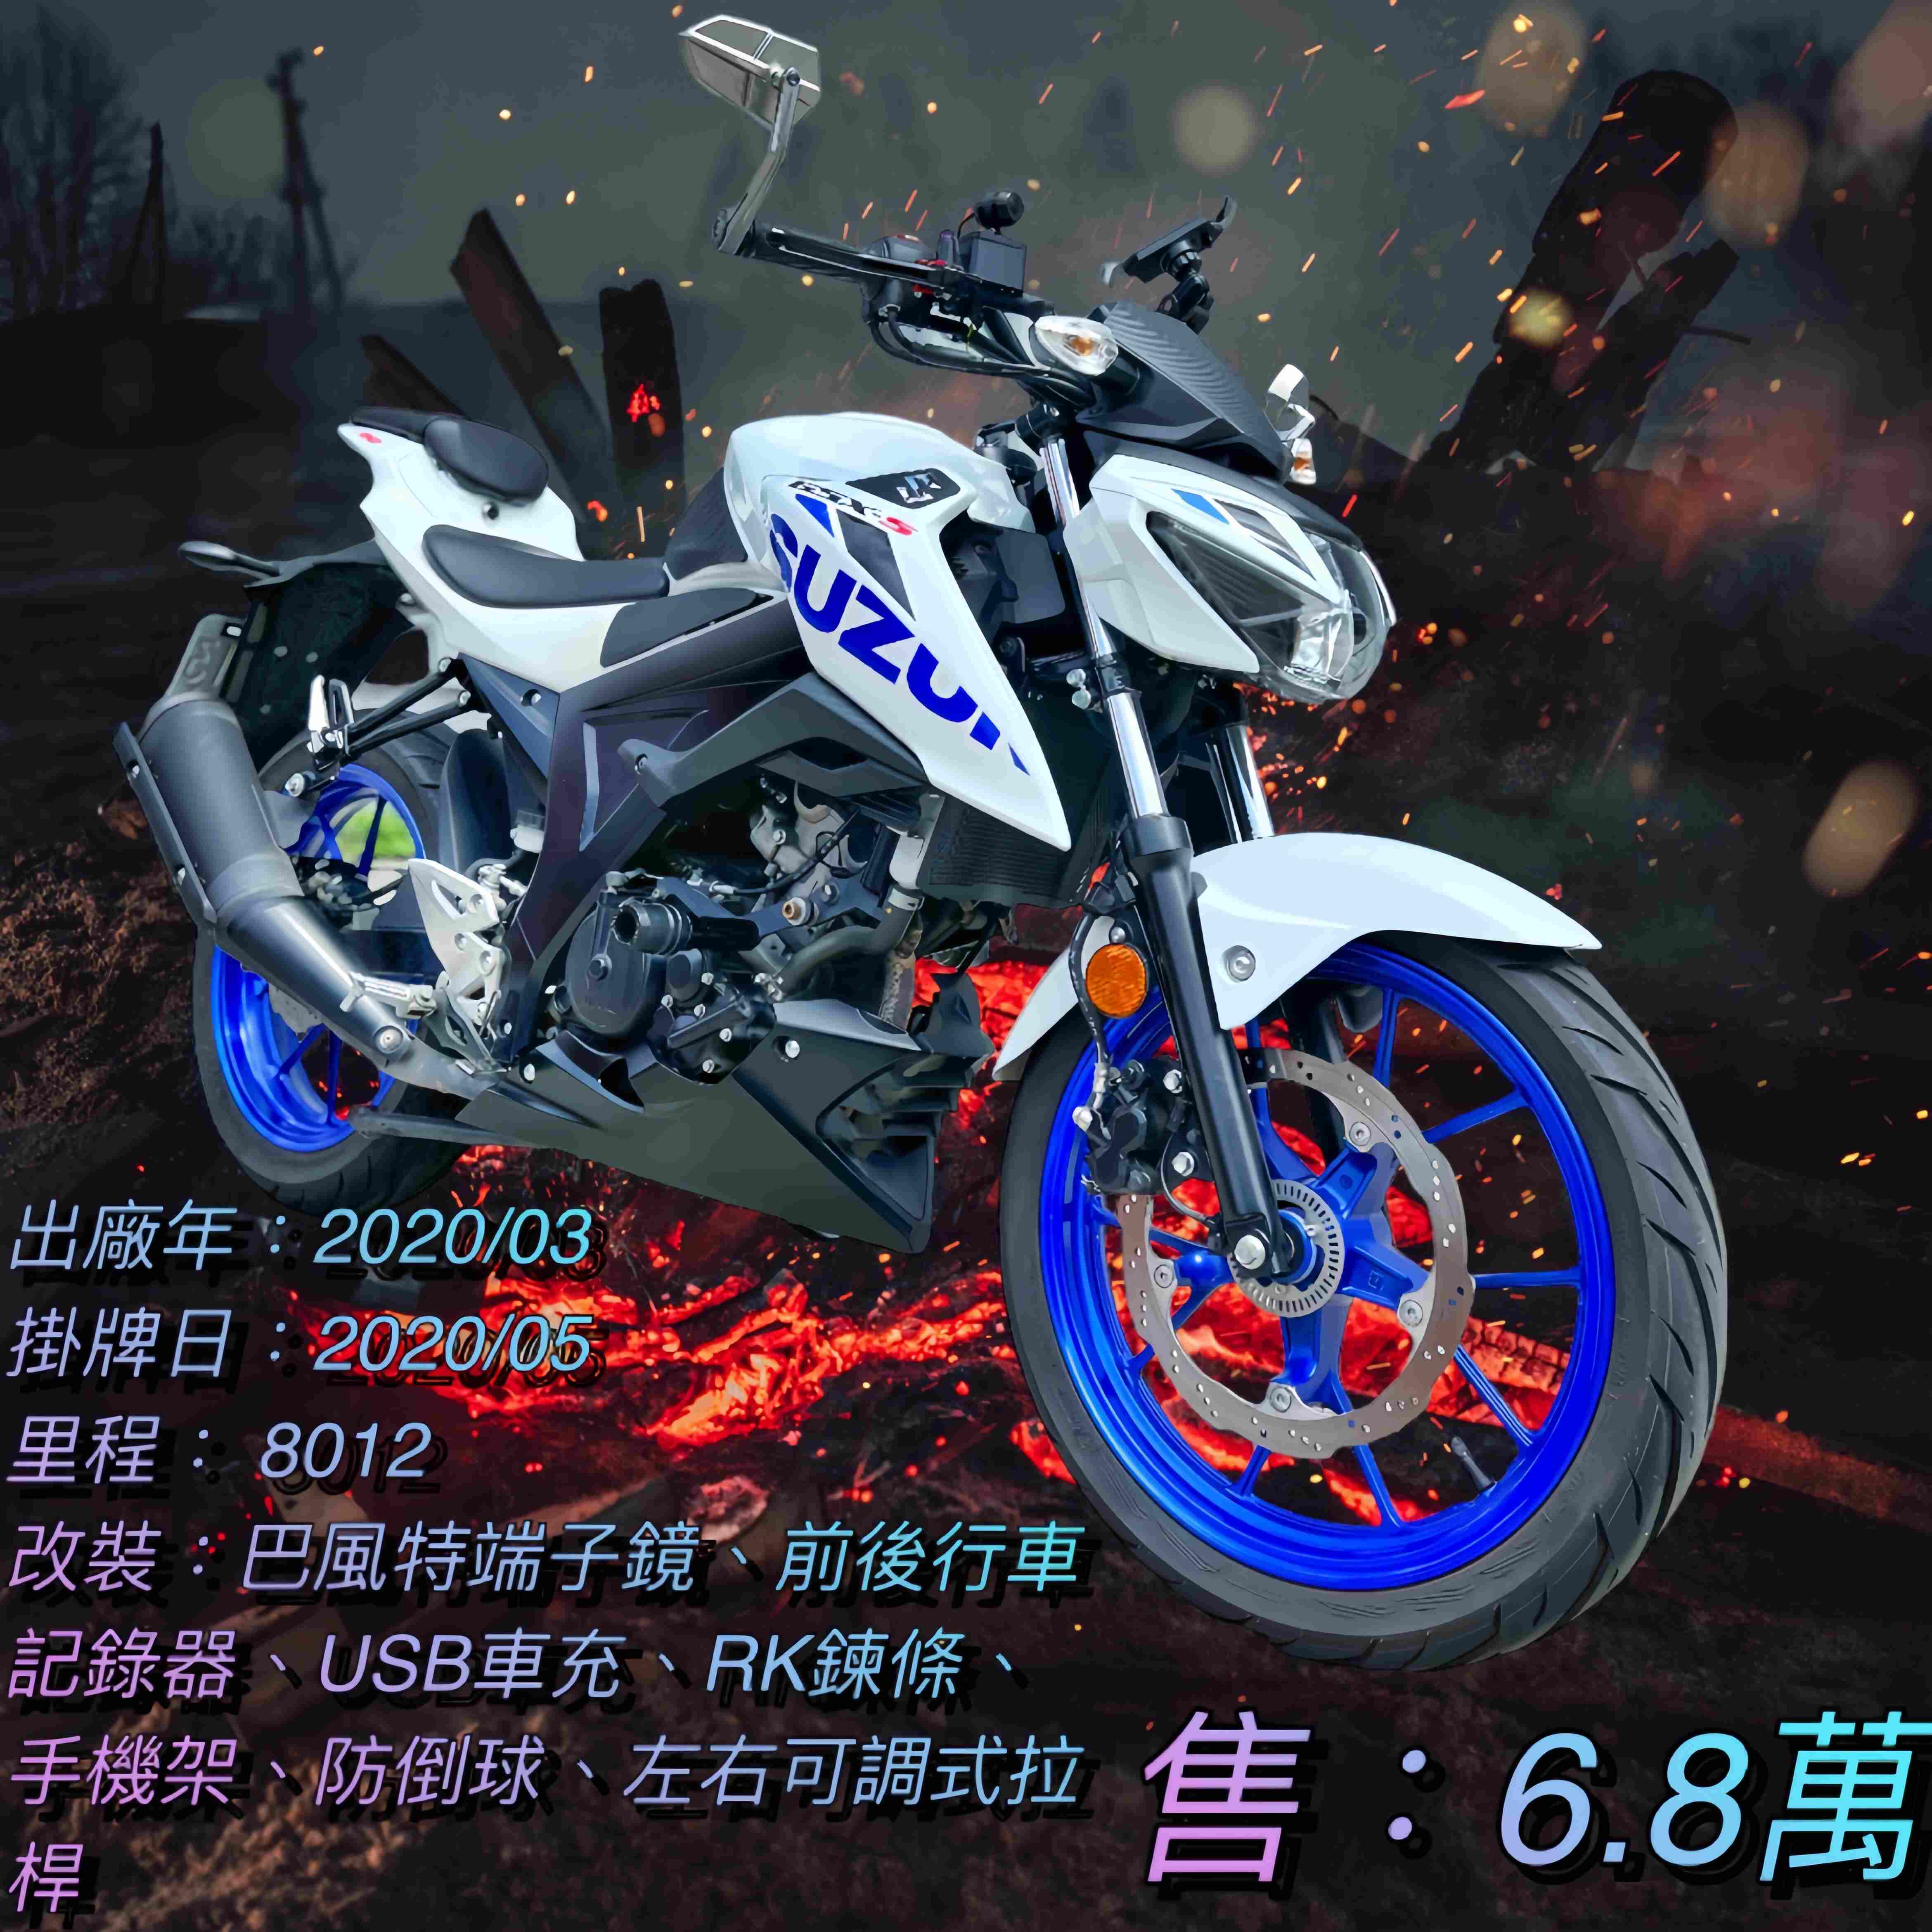 【阿宏大型重機買賣】SUZUKI GSX-S150 - 「Webike-摩托車市」 2020年 GSXS150 稀有白色系 無摔 無事故 檔車入門首選